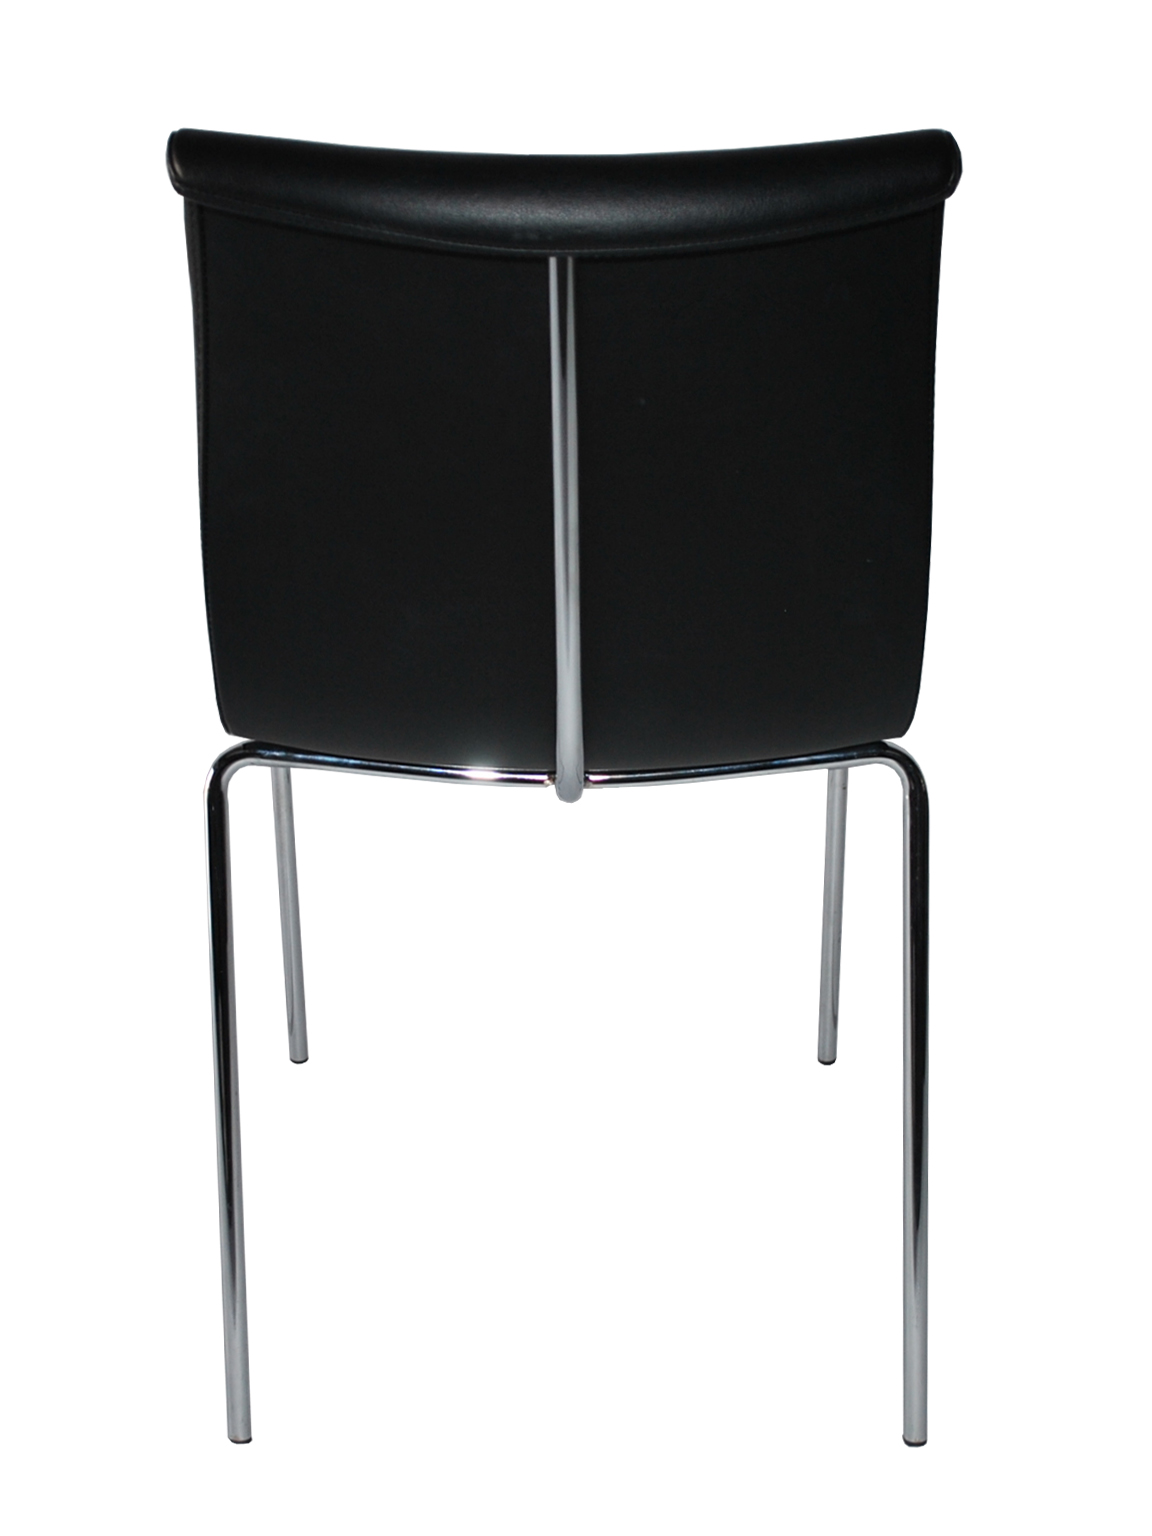 zwart leder stapel stoel afb 3-groot-vert-1152×1536